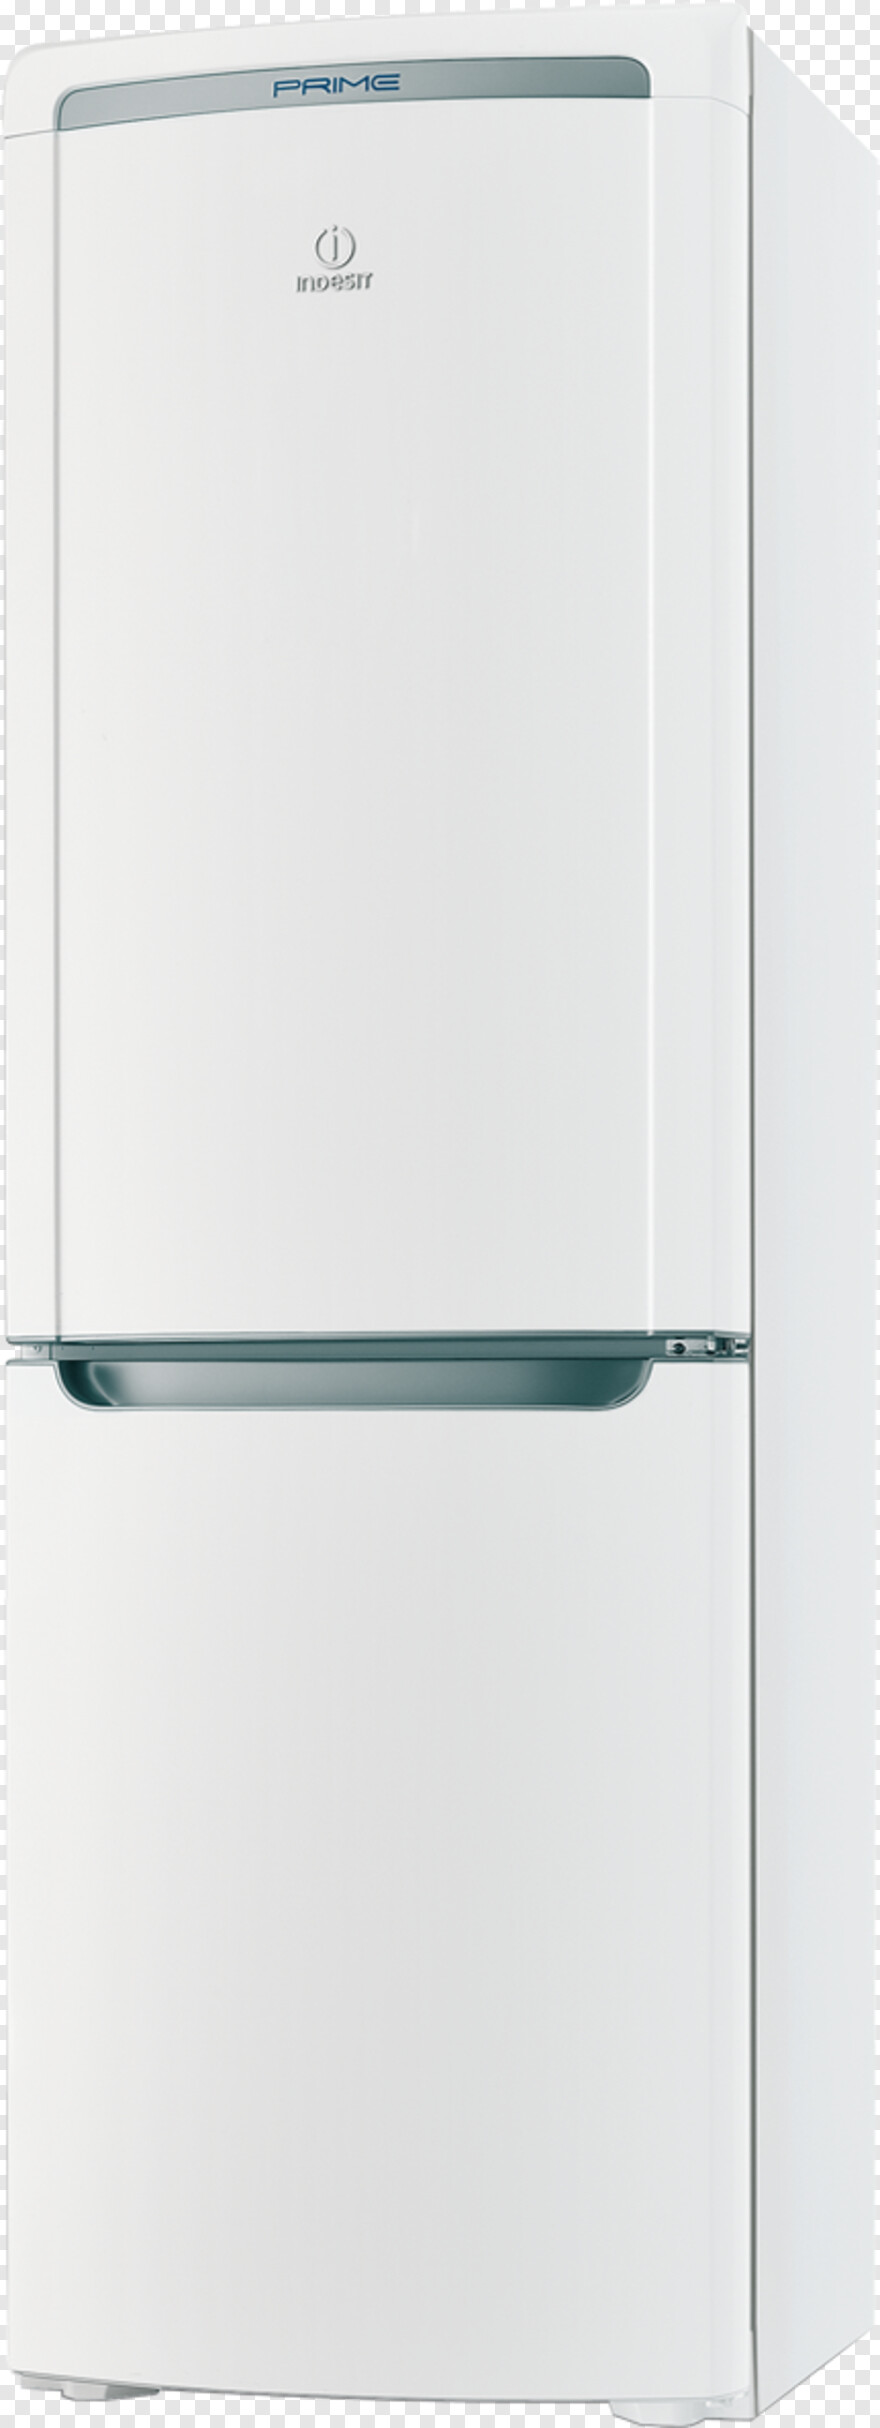 refrigerator # 636734